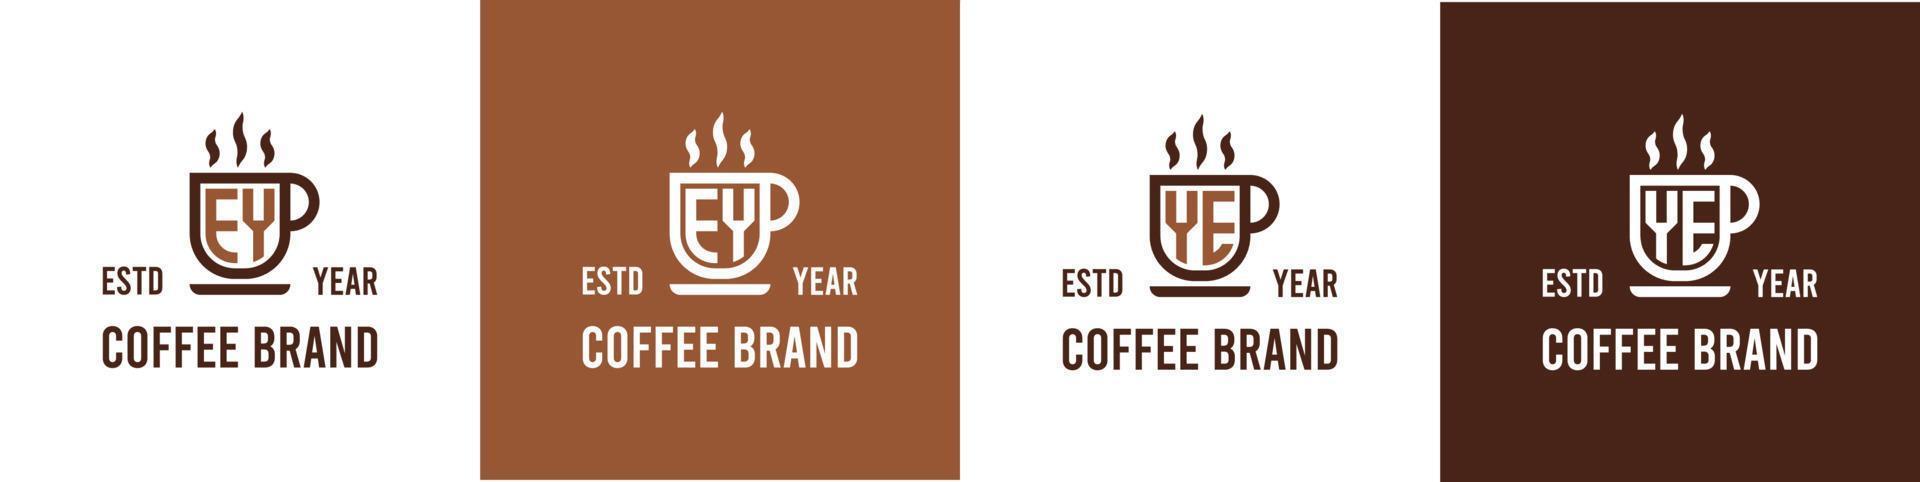 letra ey y S.M café logo, adecuado para ninguna negocio relacionado a café, té, o otro con ey o S.M iniciales. vector